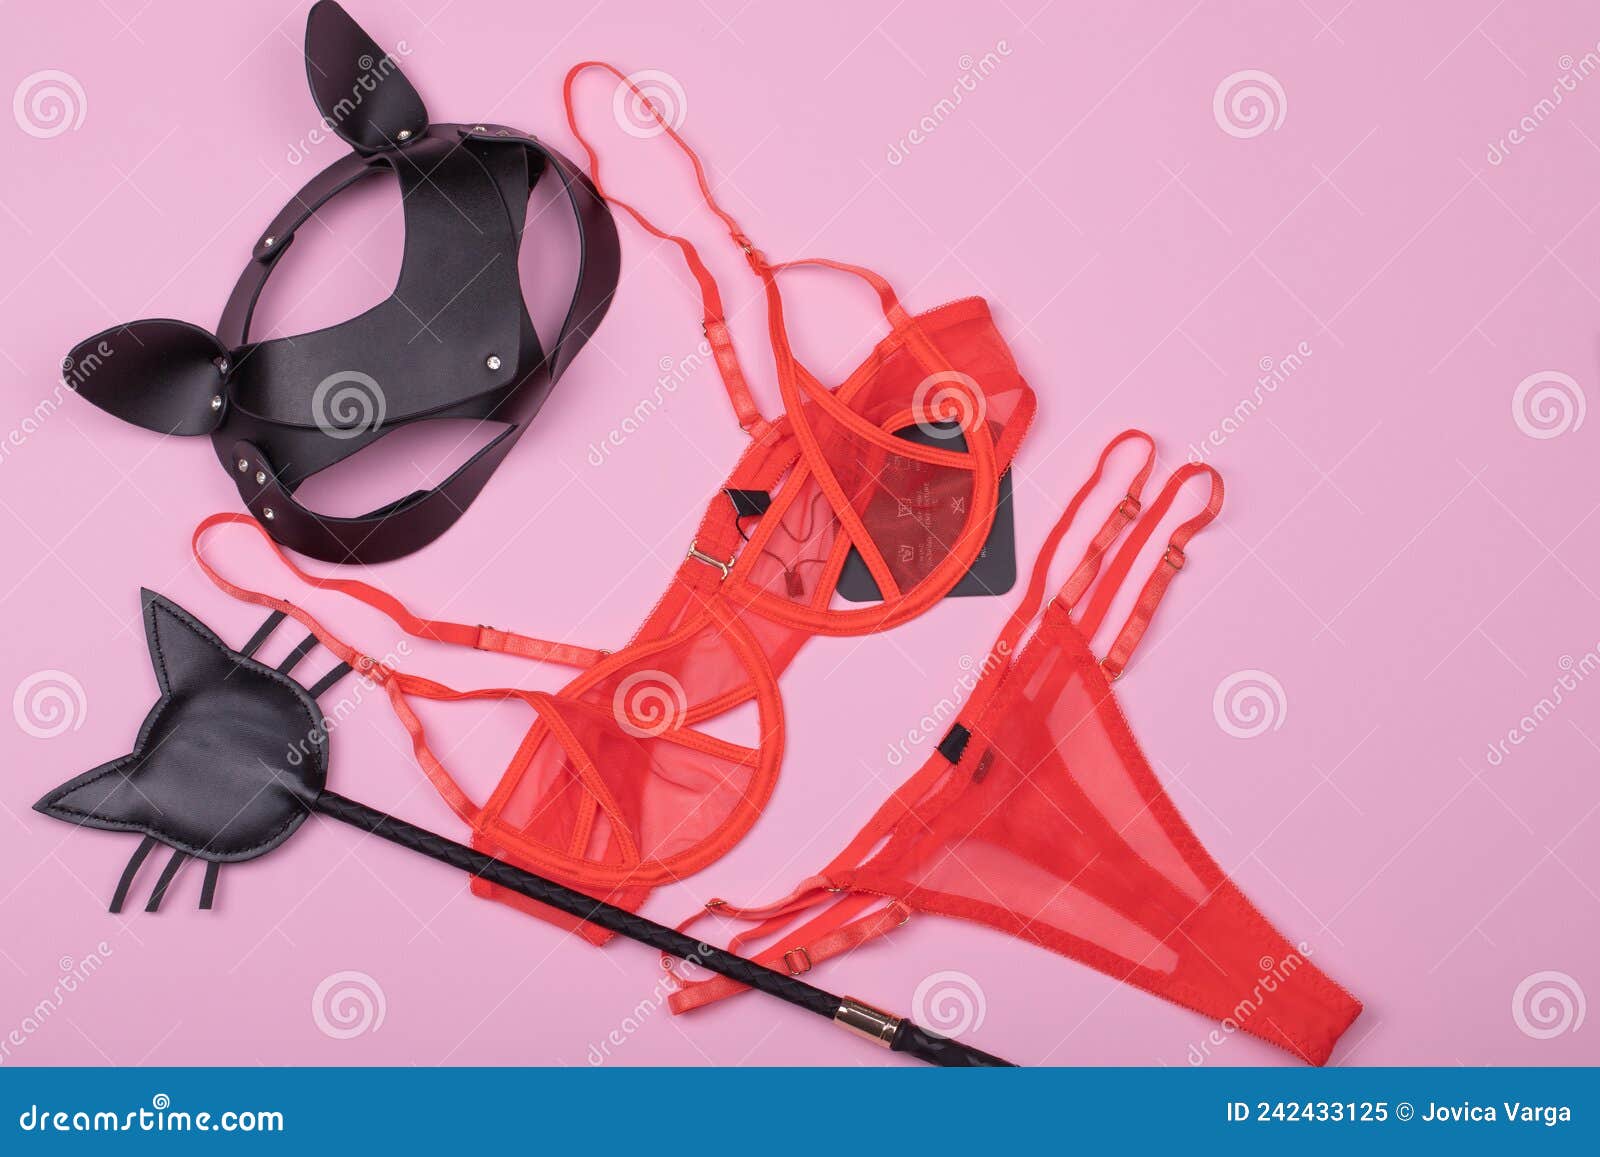 Fotos de Set de juguetes sexuales y objeto BDSM sobre fondo de